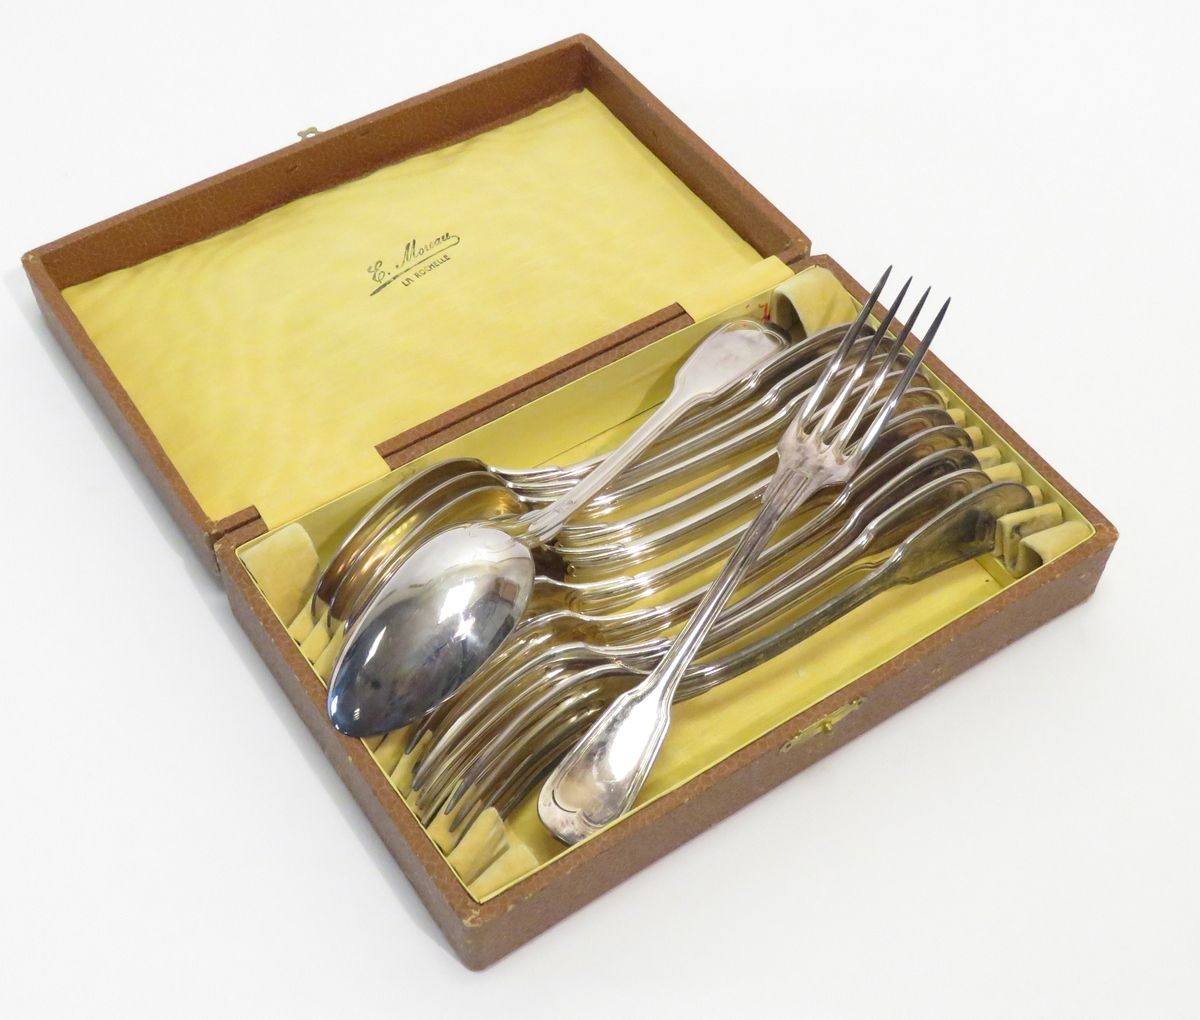 Null 套装六件镀银餐具（12件），"菲力特 "图案。长度：21.5厘米。装在盒子里。